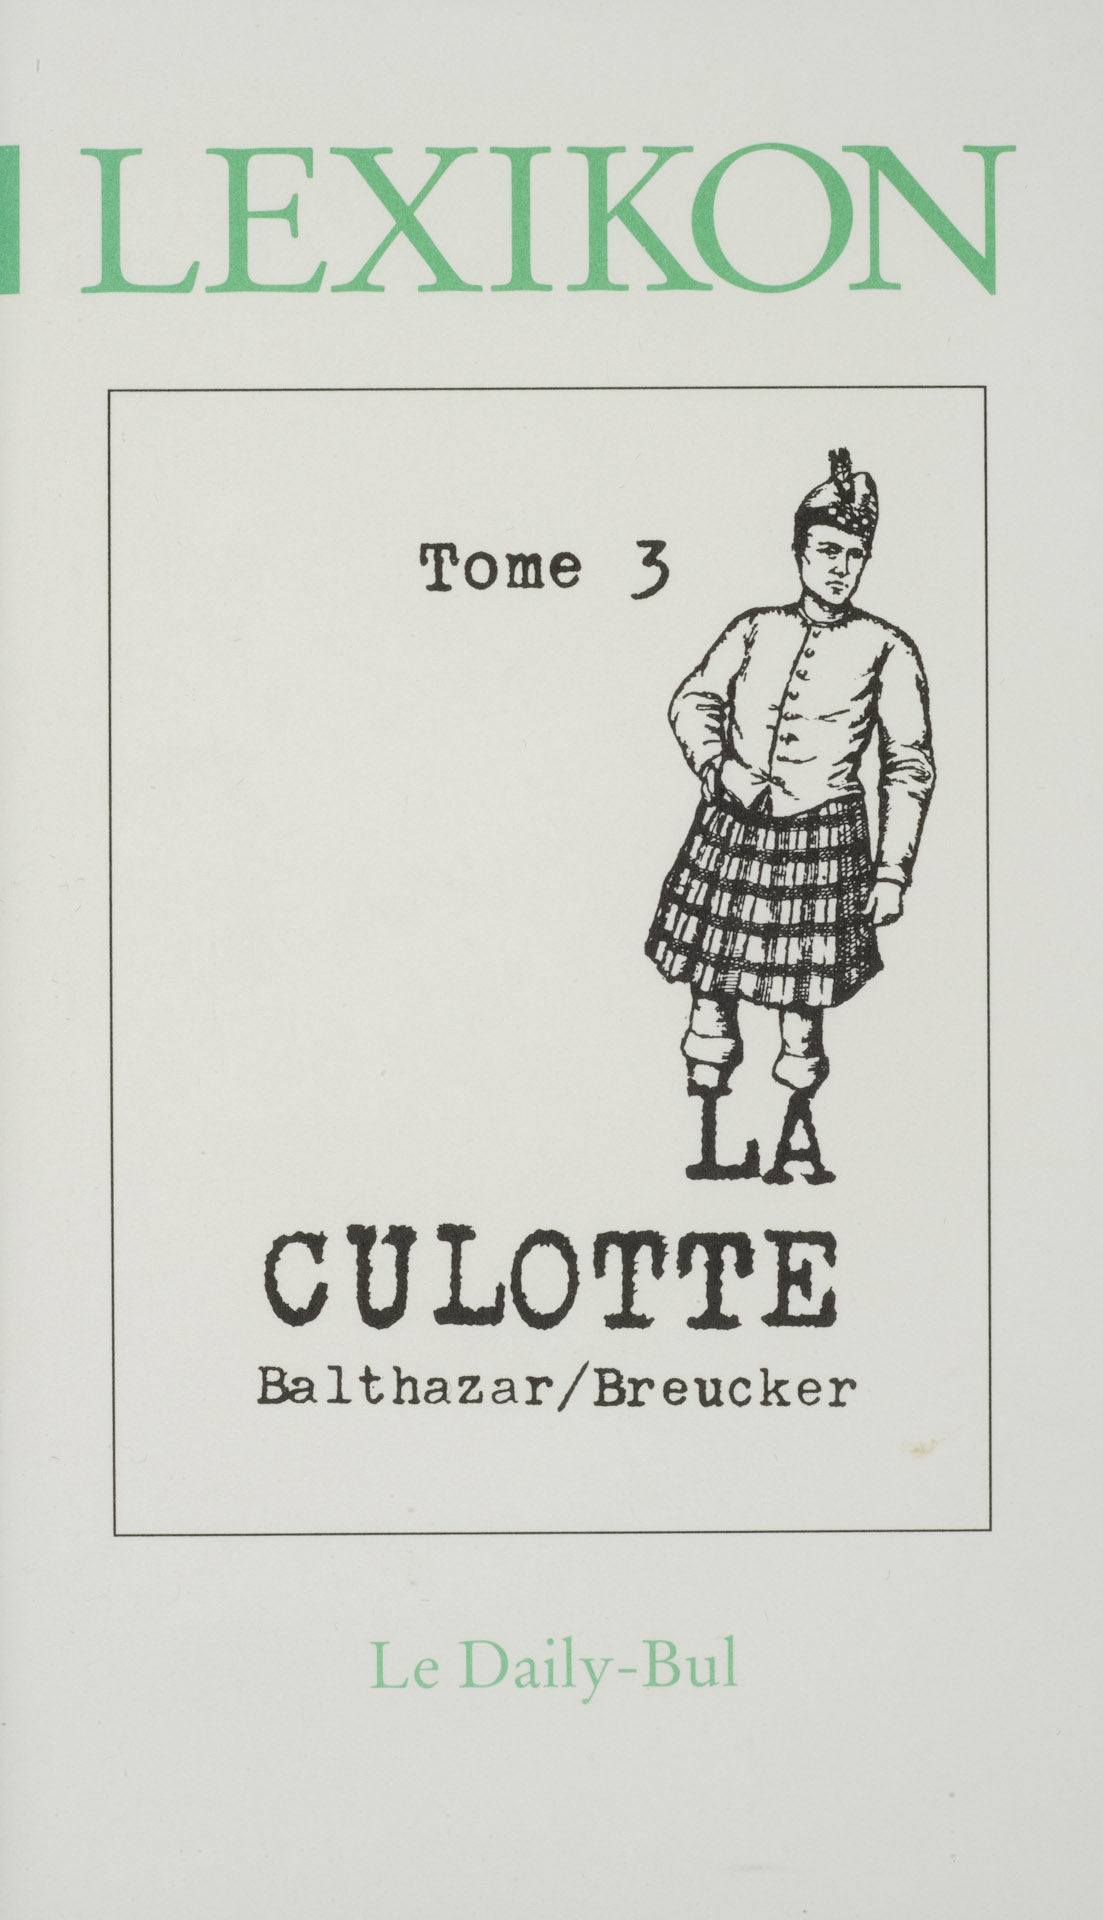 La culotte (Lexikon tome 3)